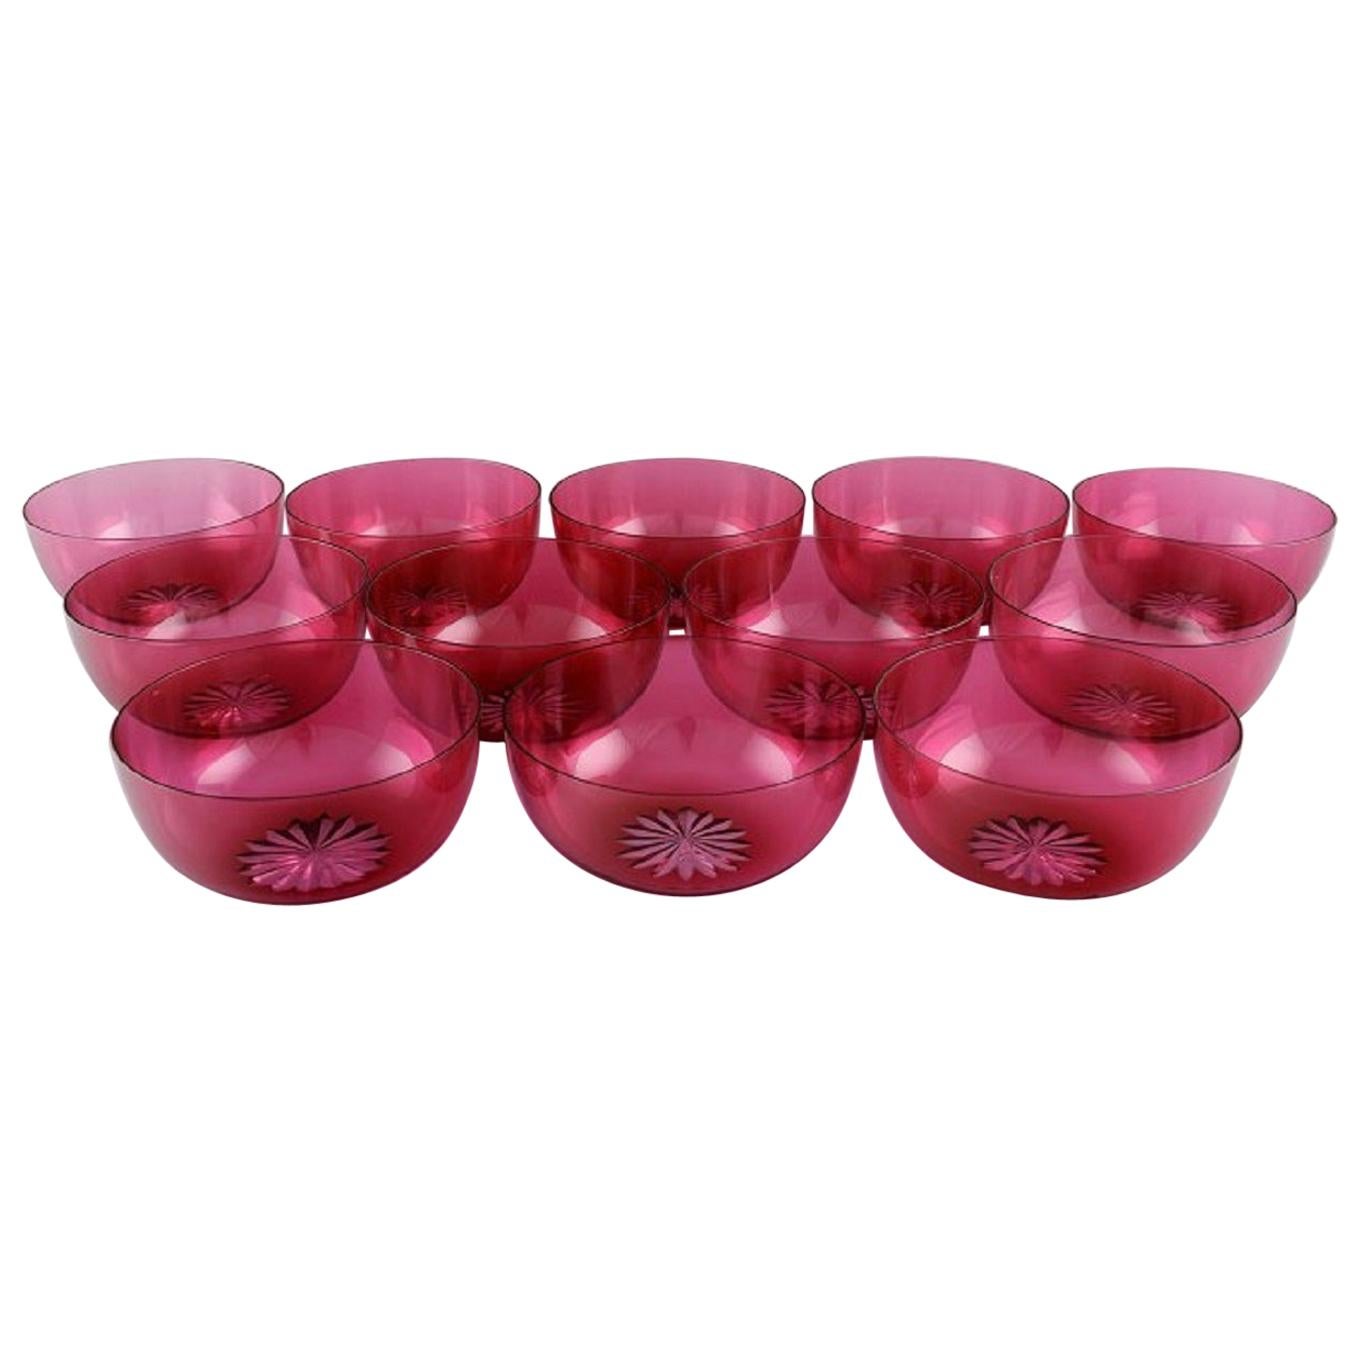 Set of Twelve Holmegaard Bowls in Pink Art Glass, Danish Design, Mid-20th C